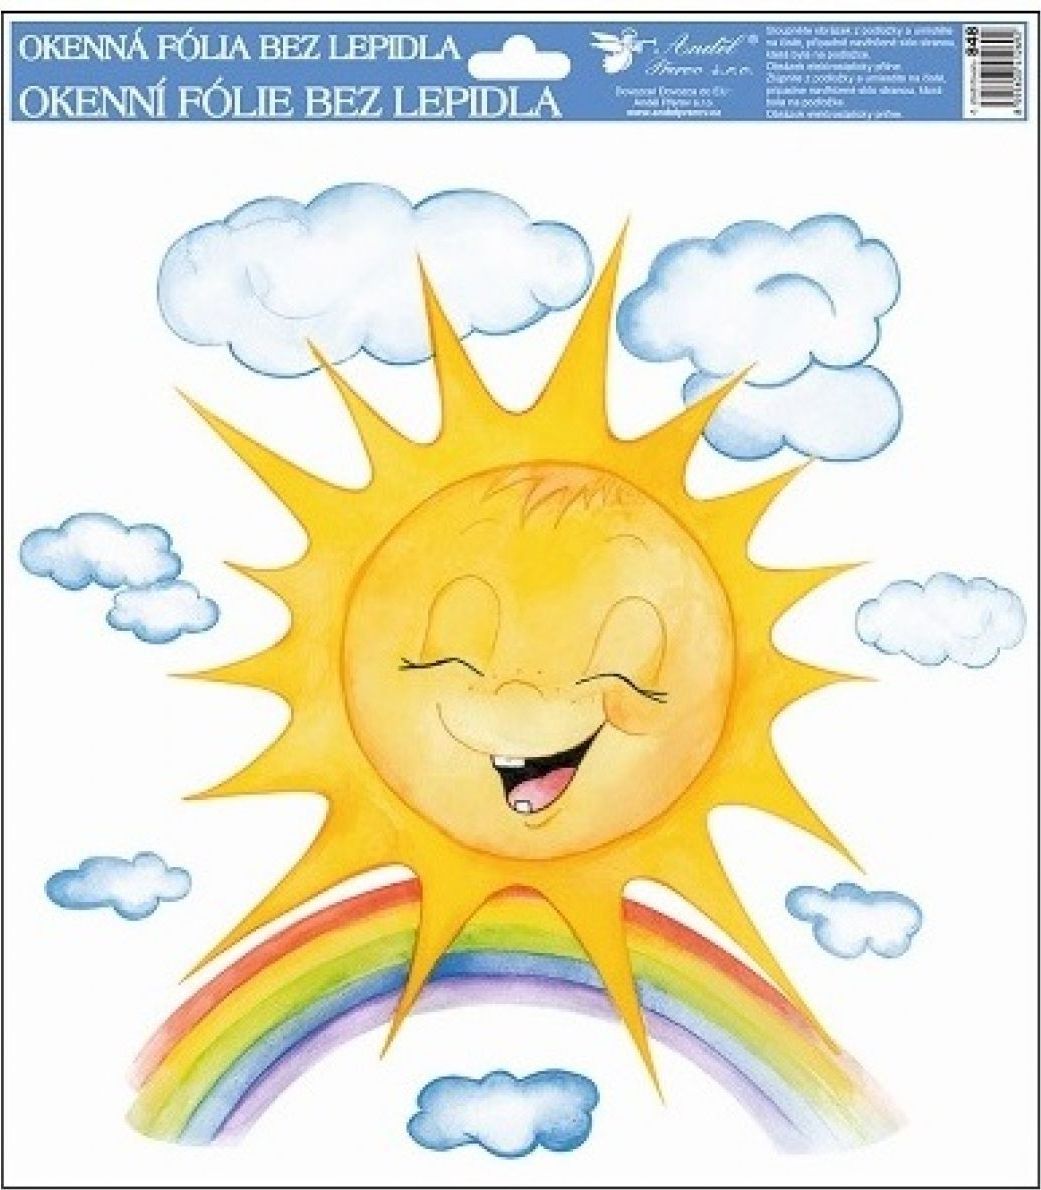 Anděl Okenní fólie ručně malovaná sluníčka 30 x 30 cm Sluníčko s duhou - obrázek 1